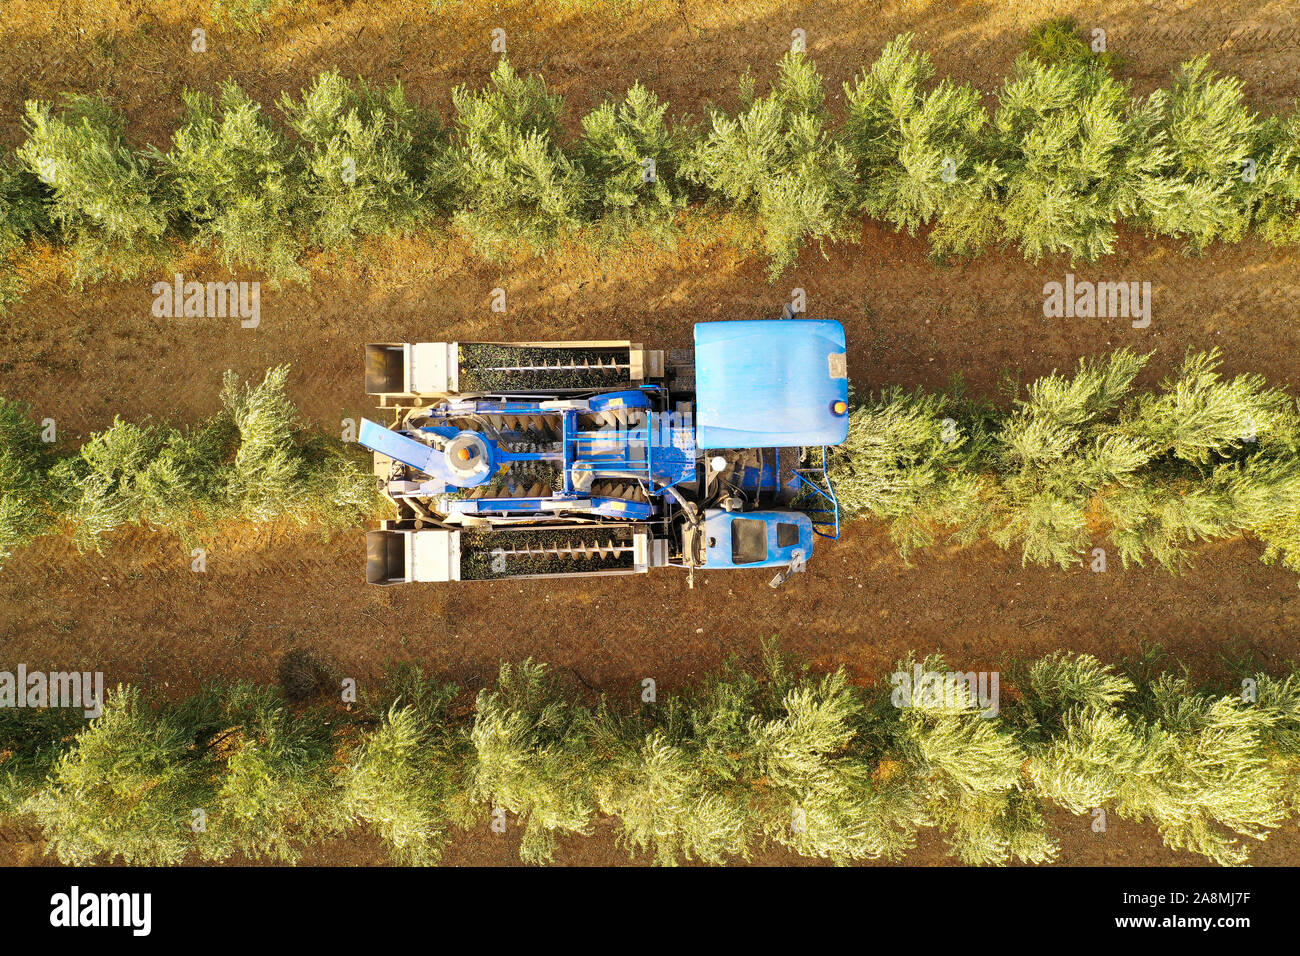 Olivenöl Harvester über Reihen von Olivenbäumen und sanft schütteln und Abbau der Oliven aus den Zweigen, von oben nach unten Luftaufnahmen des Prozesses. Stockfoto